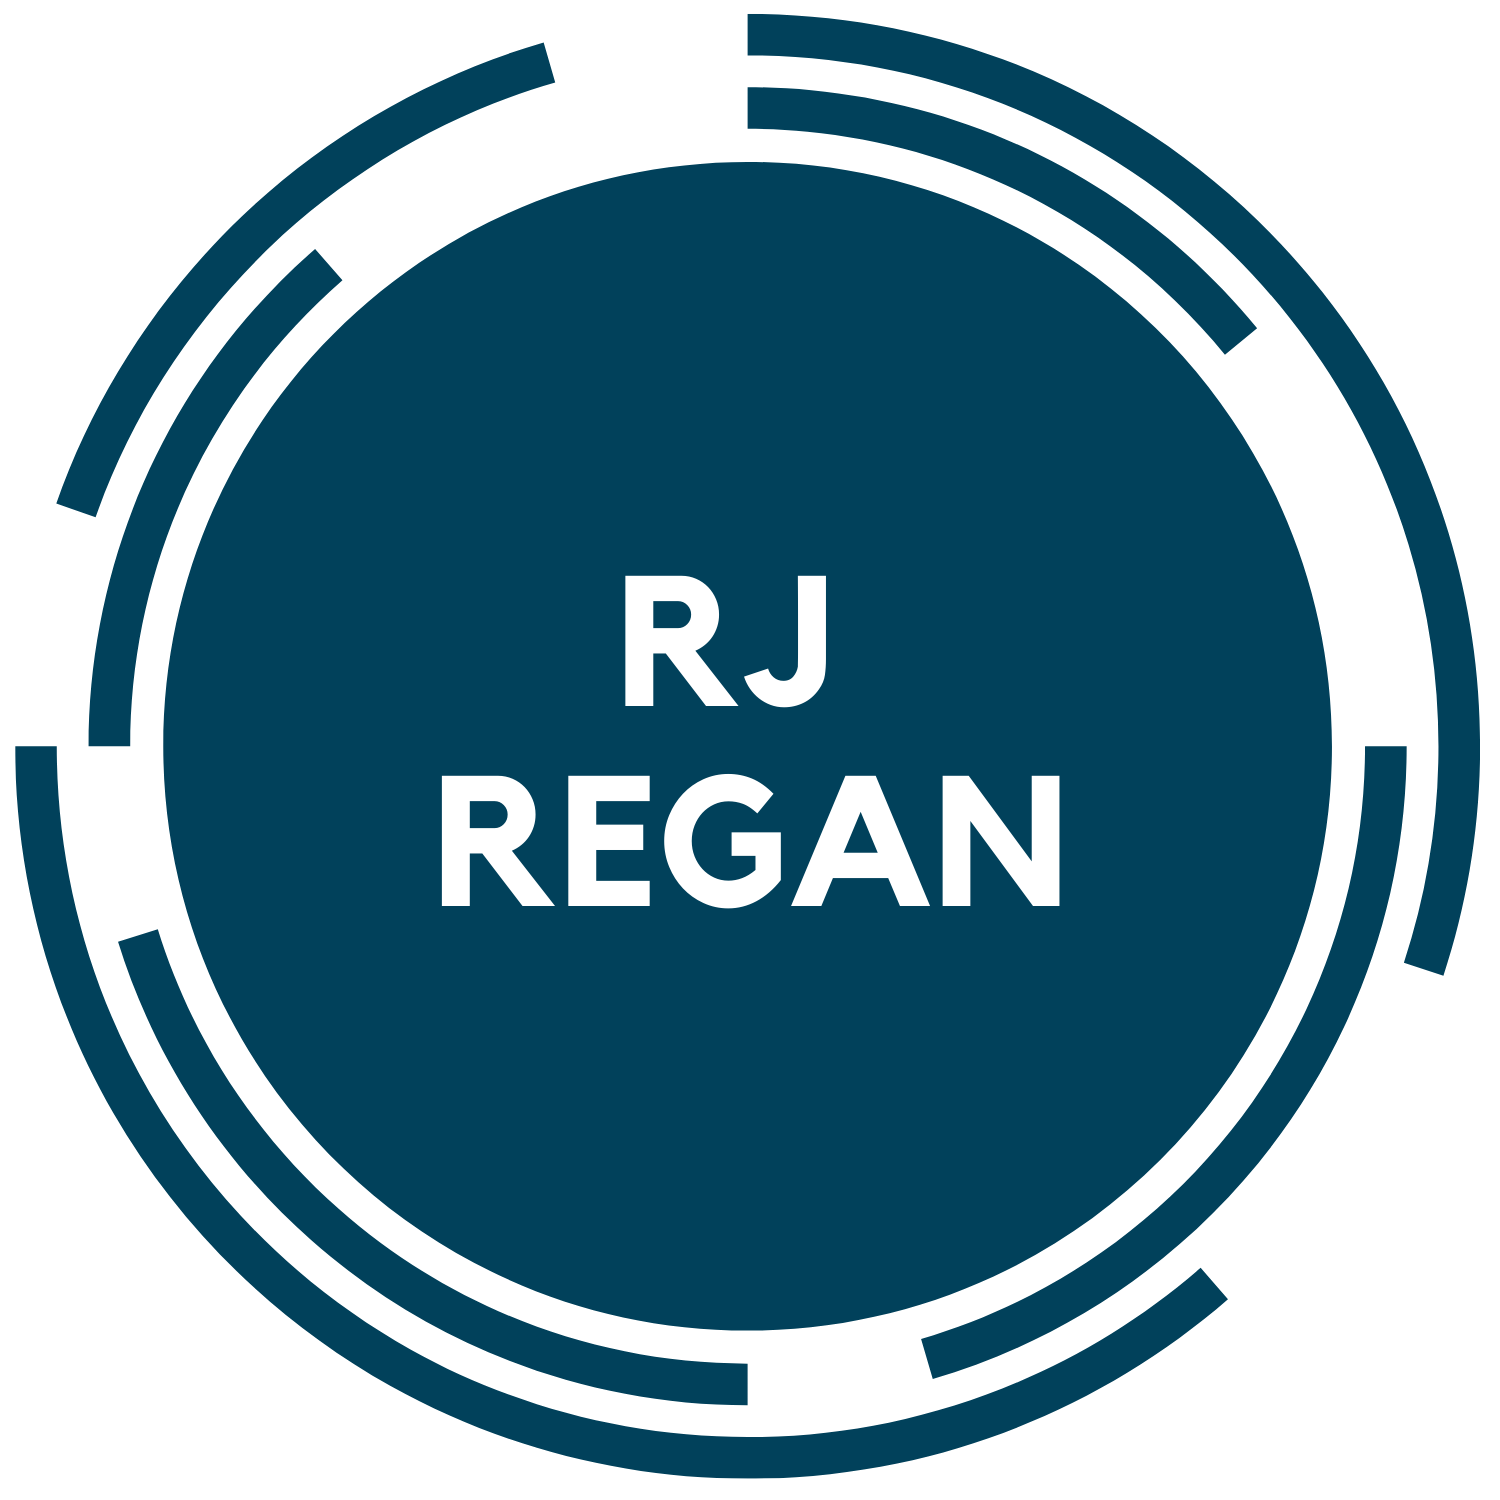 Robert RJ Regan